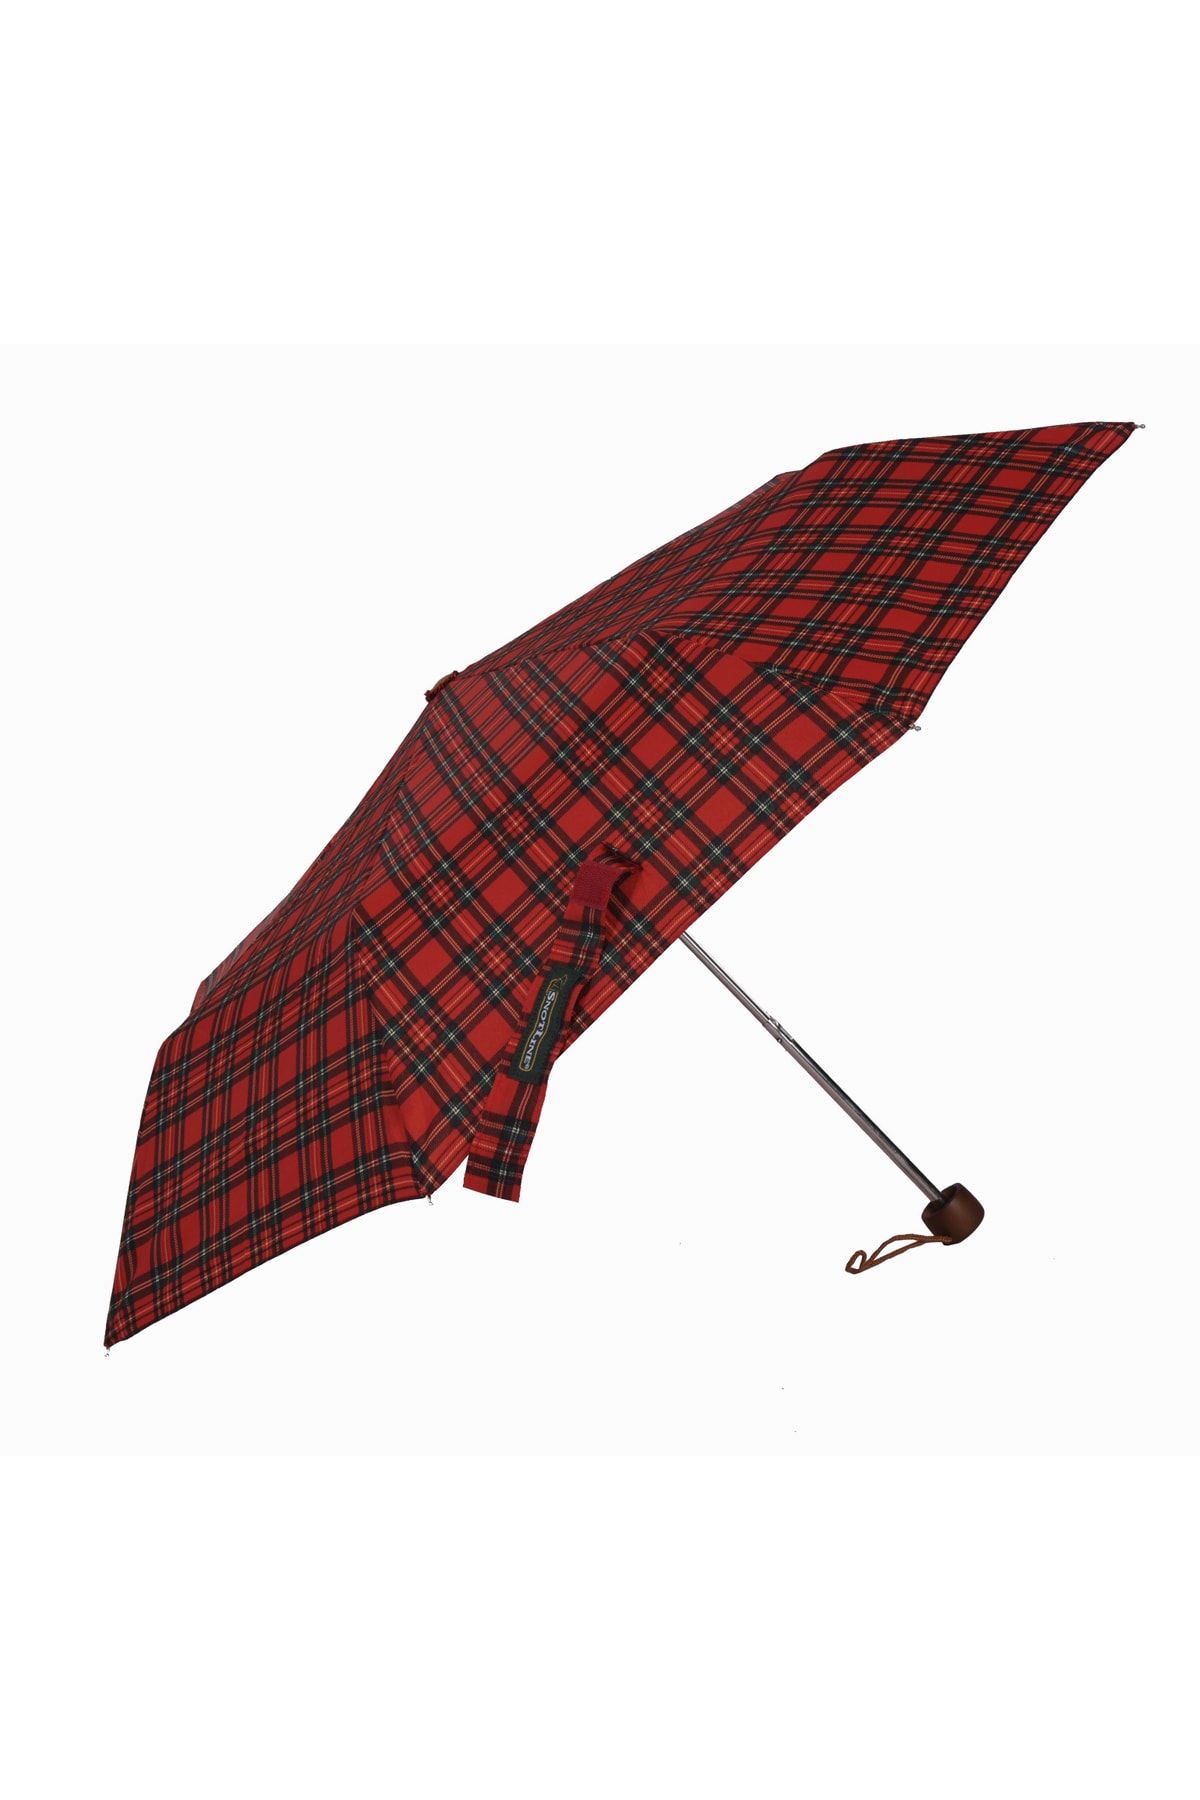 APRİL Snotline Kadın Şemsiye Süper Mini Ekose Desenli Kırmızı 08l